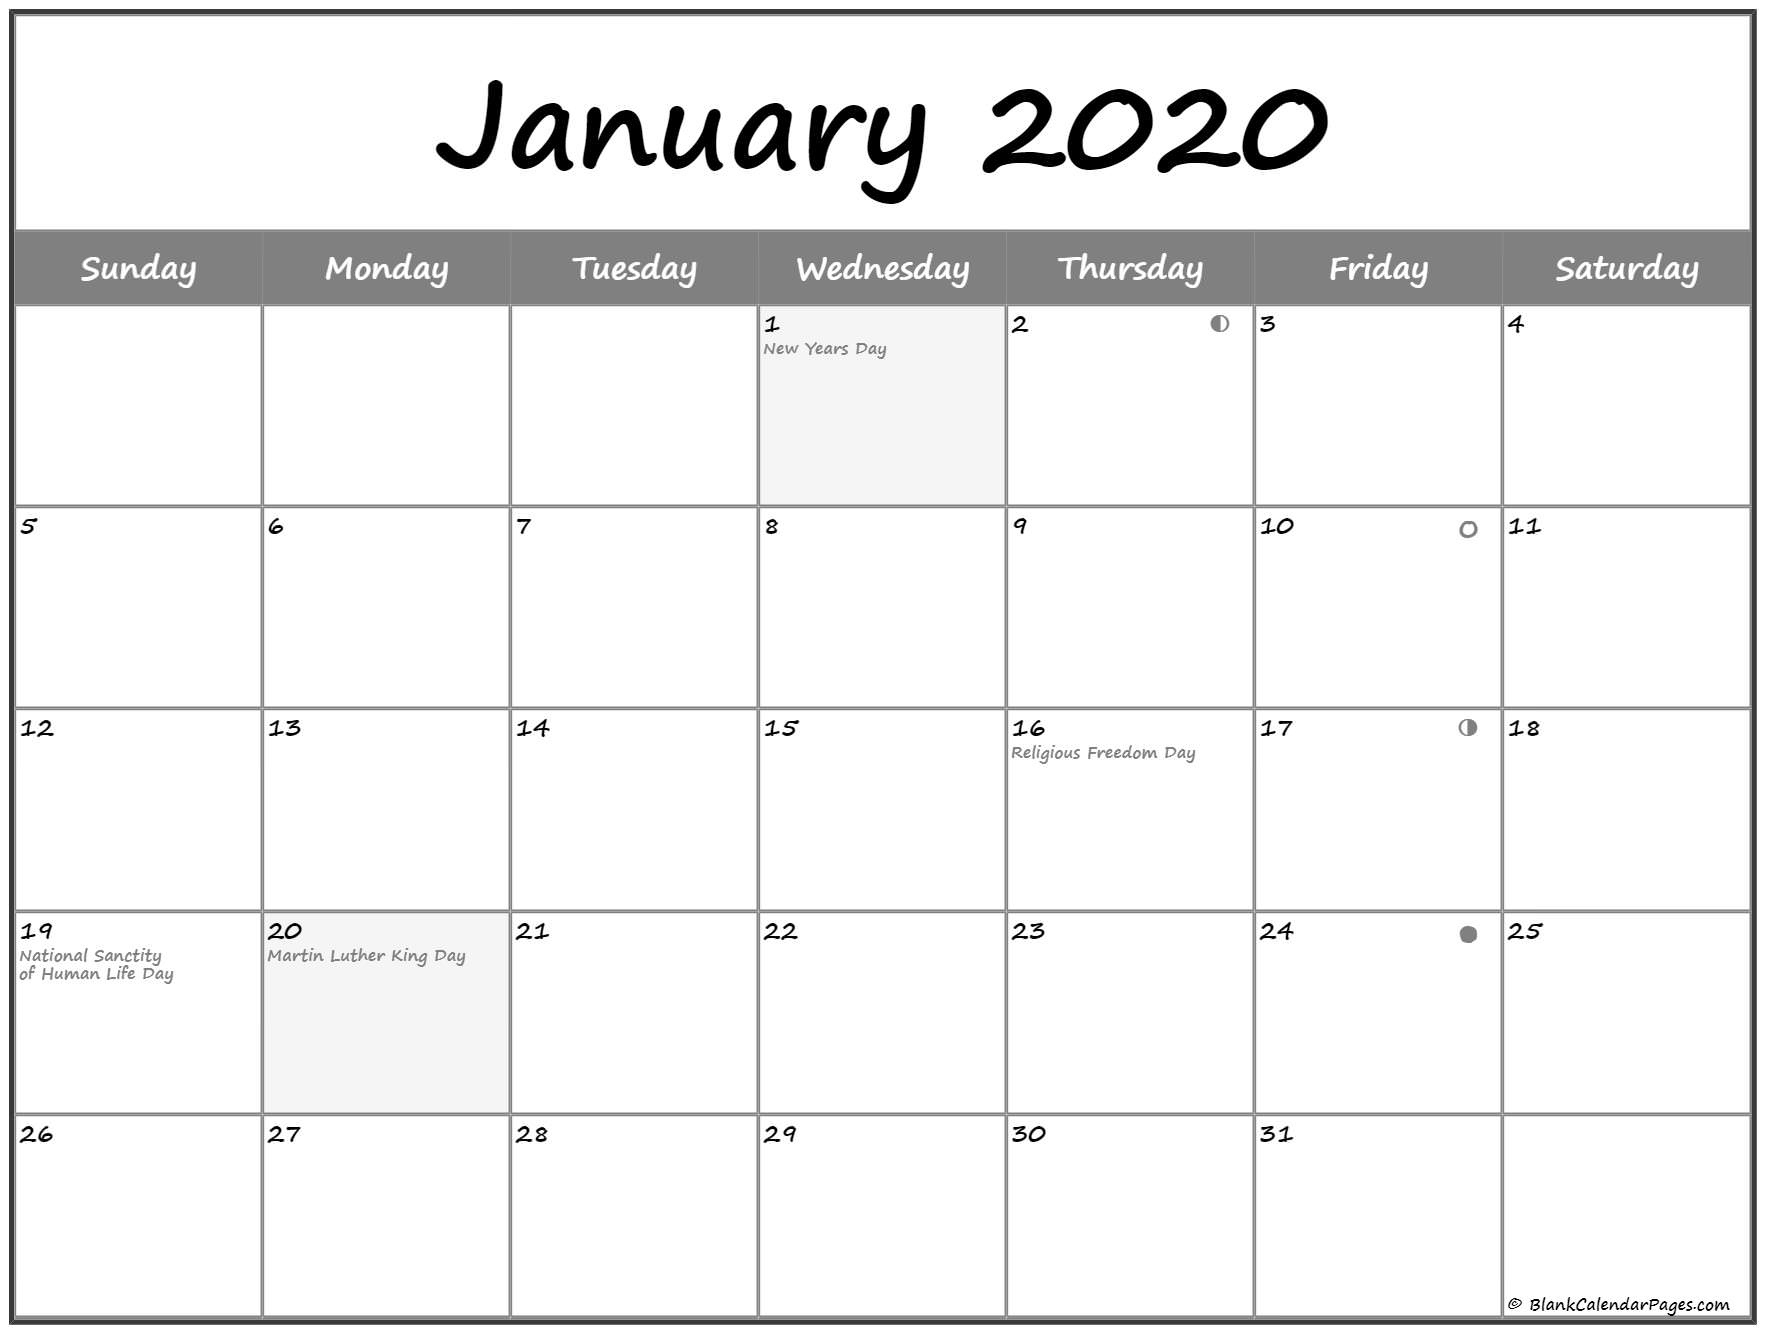 January 2020 Lunar Calendar | Moon Phase Calendar 2020 Calendar With Remarkable 2020 Calendar With Moon Phases